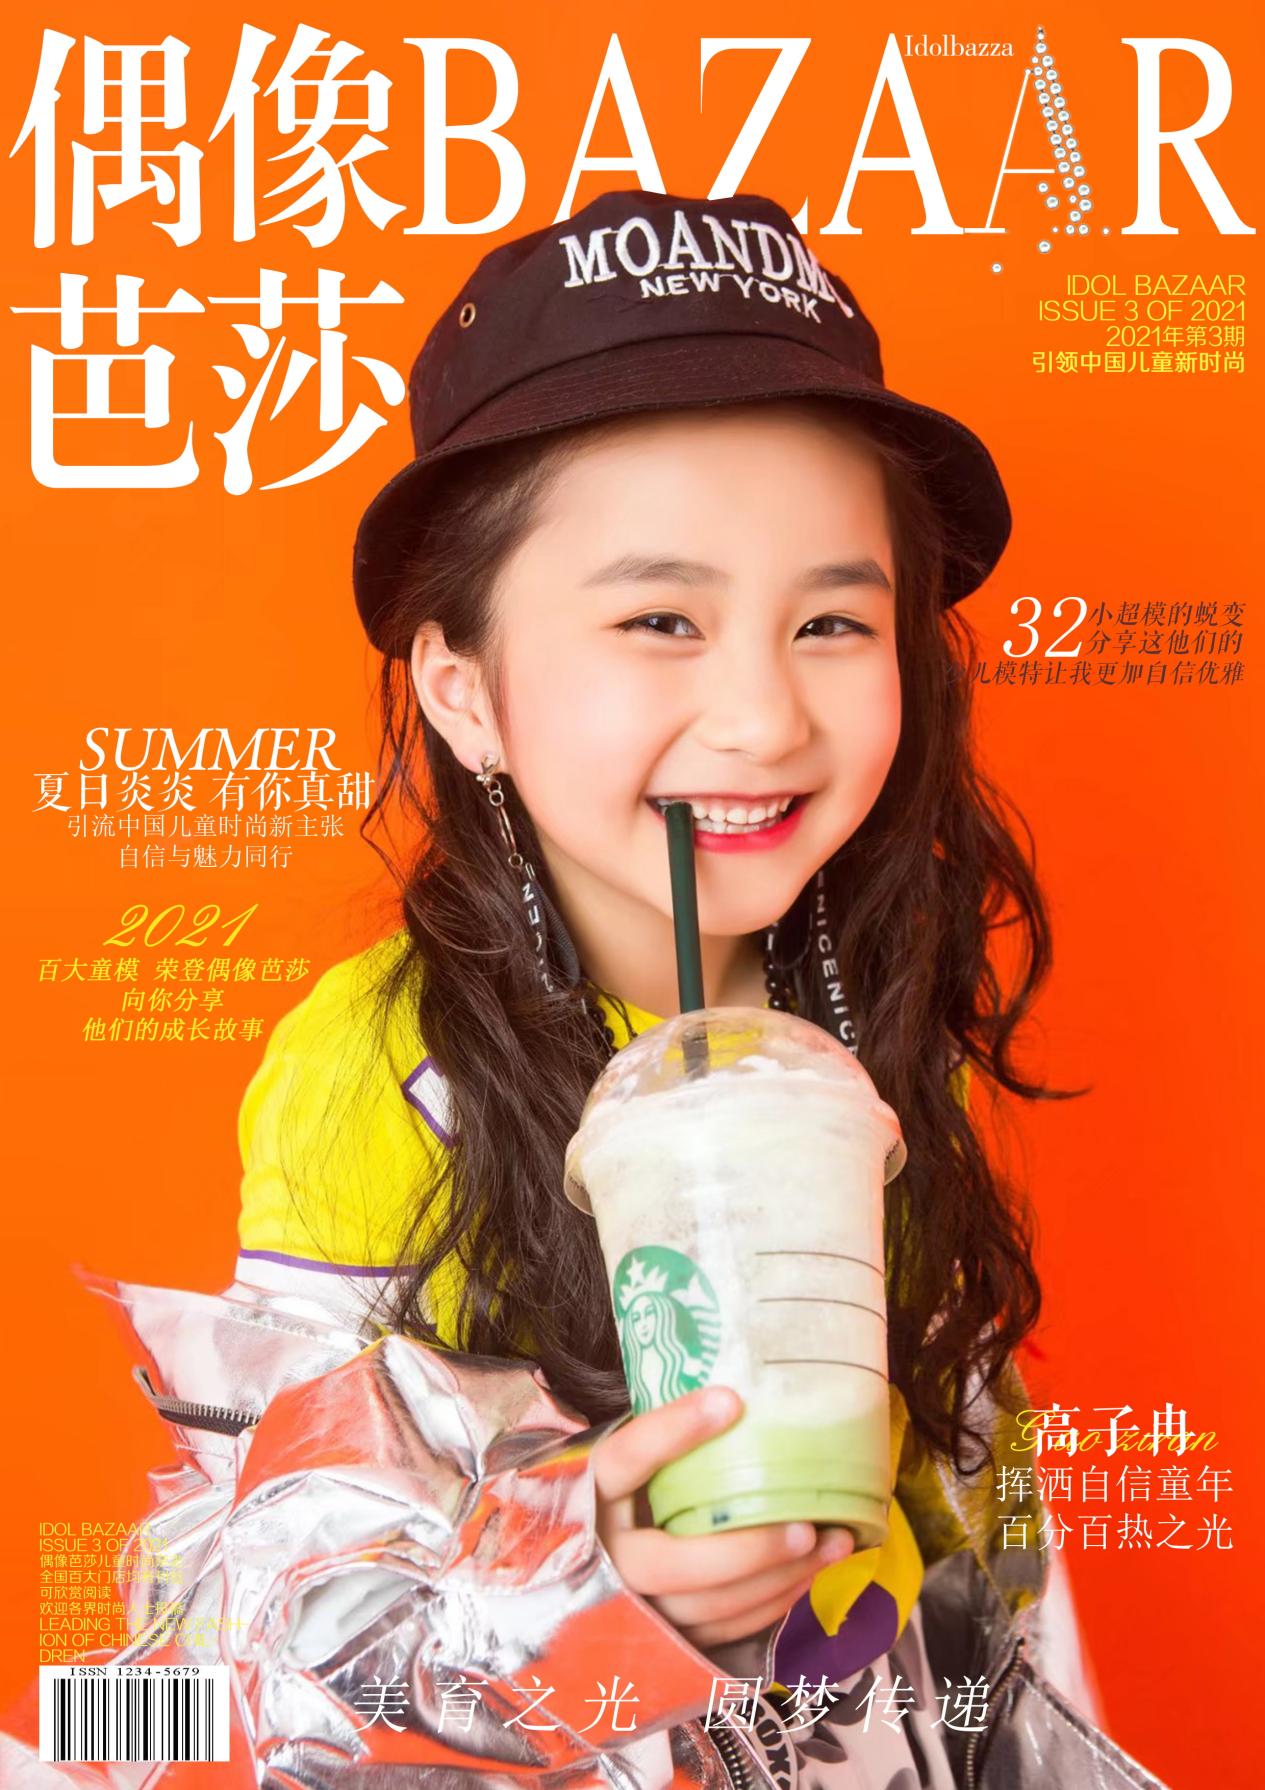 偶像芭莎,中国儿童时尚杂志专刊,现全国宝贝征集中